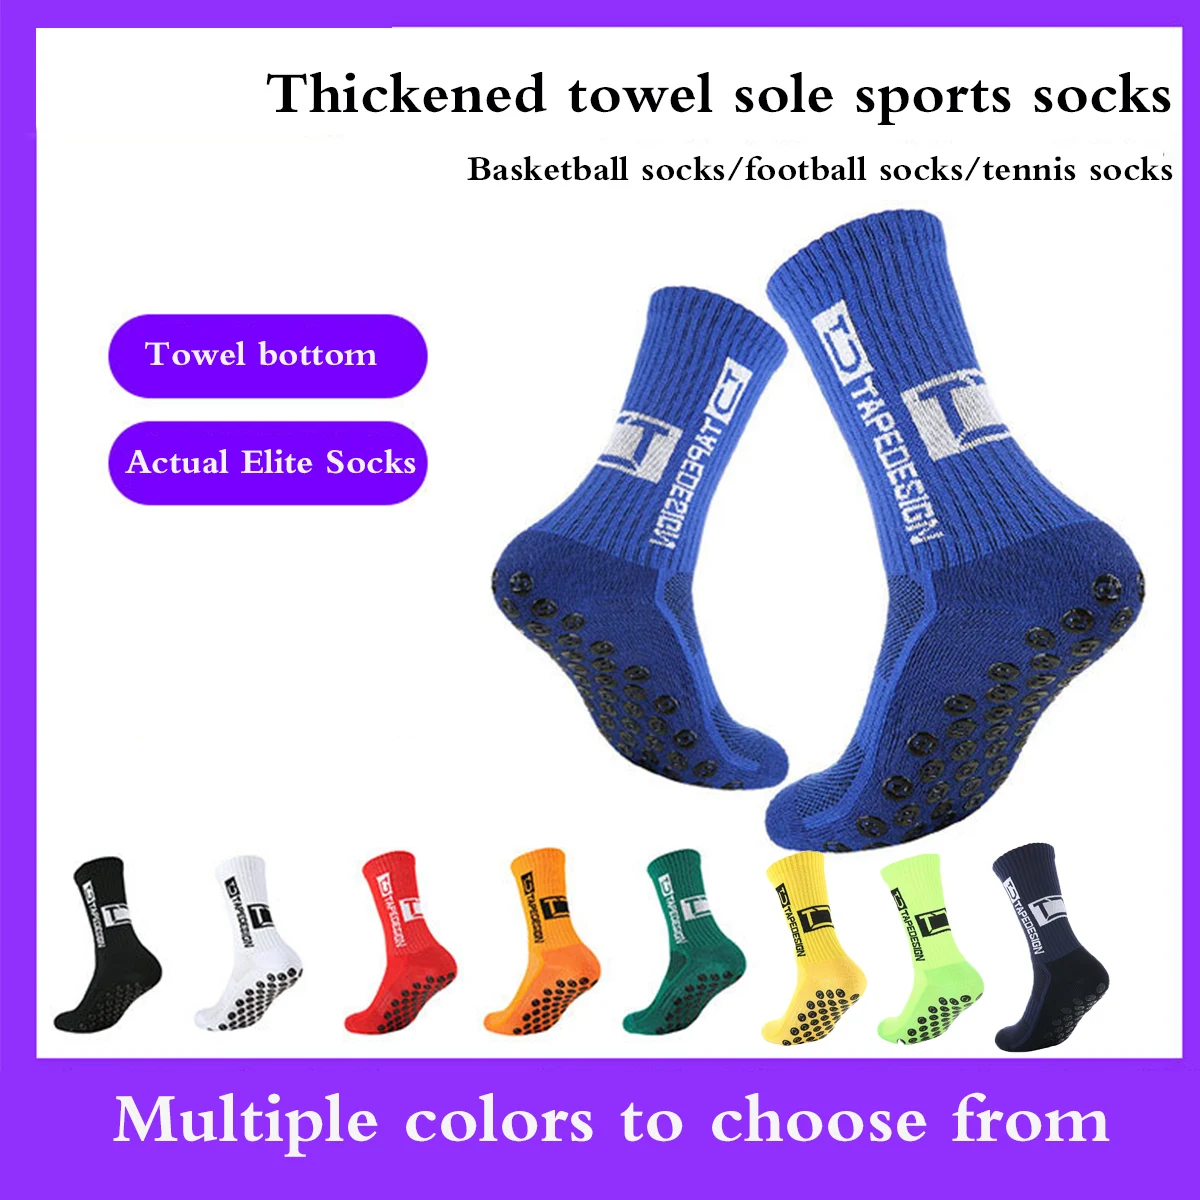 

Men's Socks Soccer Non Skid Ball Socks Anti Slip Non Slip Pads for Football Basketball Sports Socks,3/5 Pairs